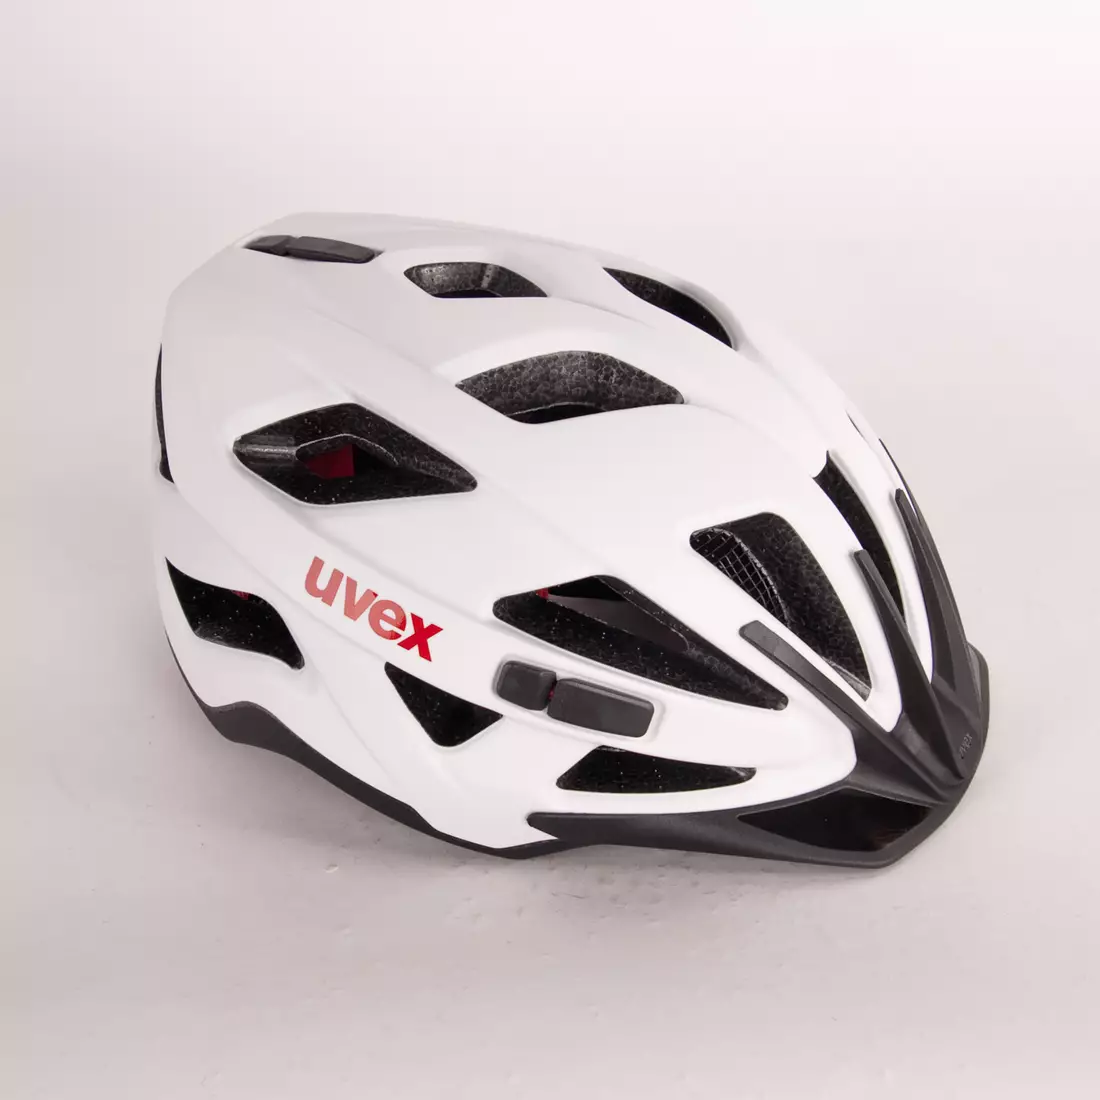 UVEX Active CC Fahrradhelm, weiß und schwarz